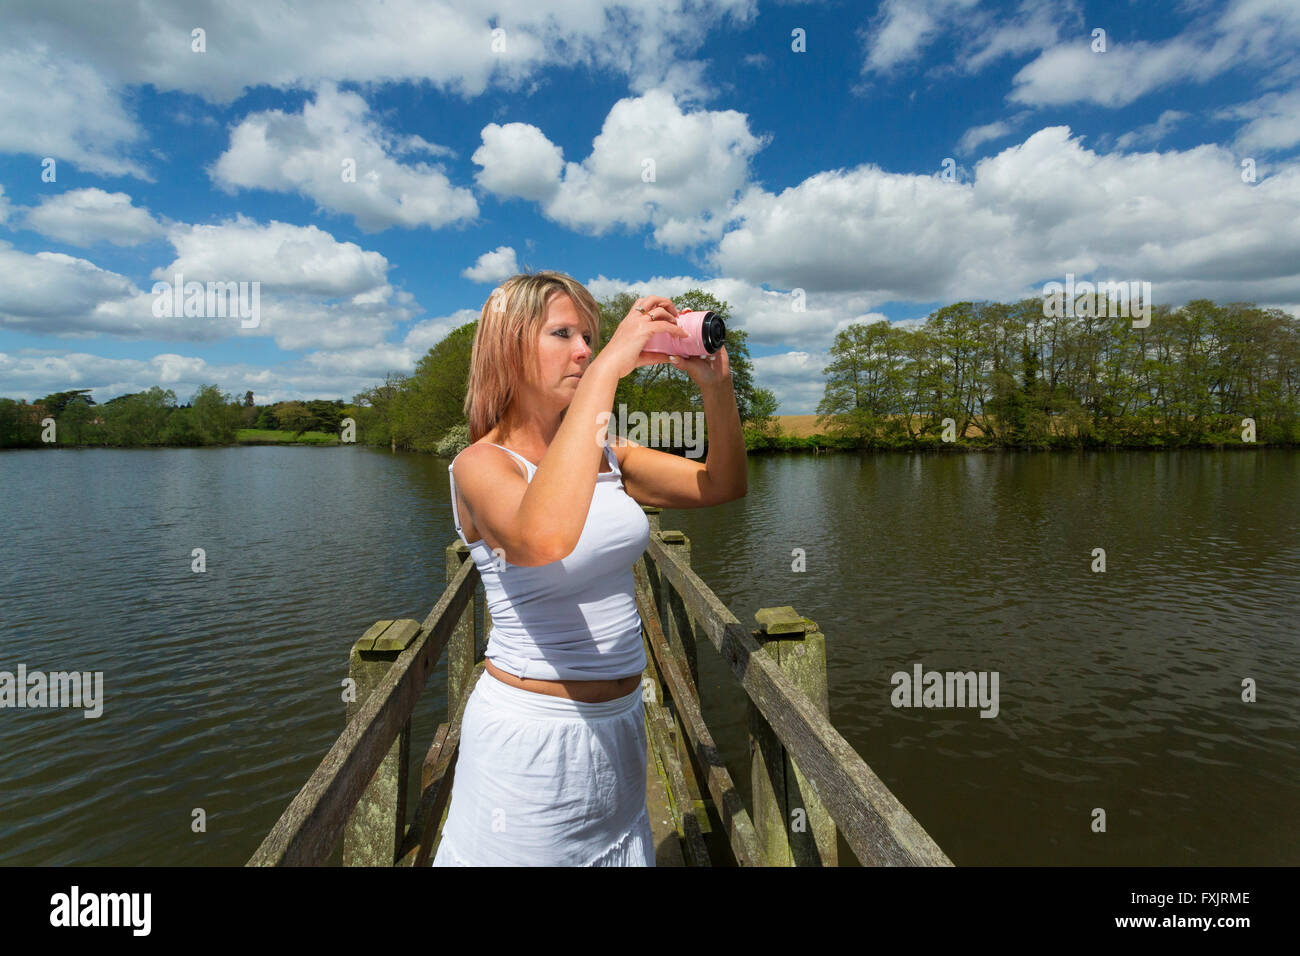 woman taking photos Stock Photo